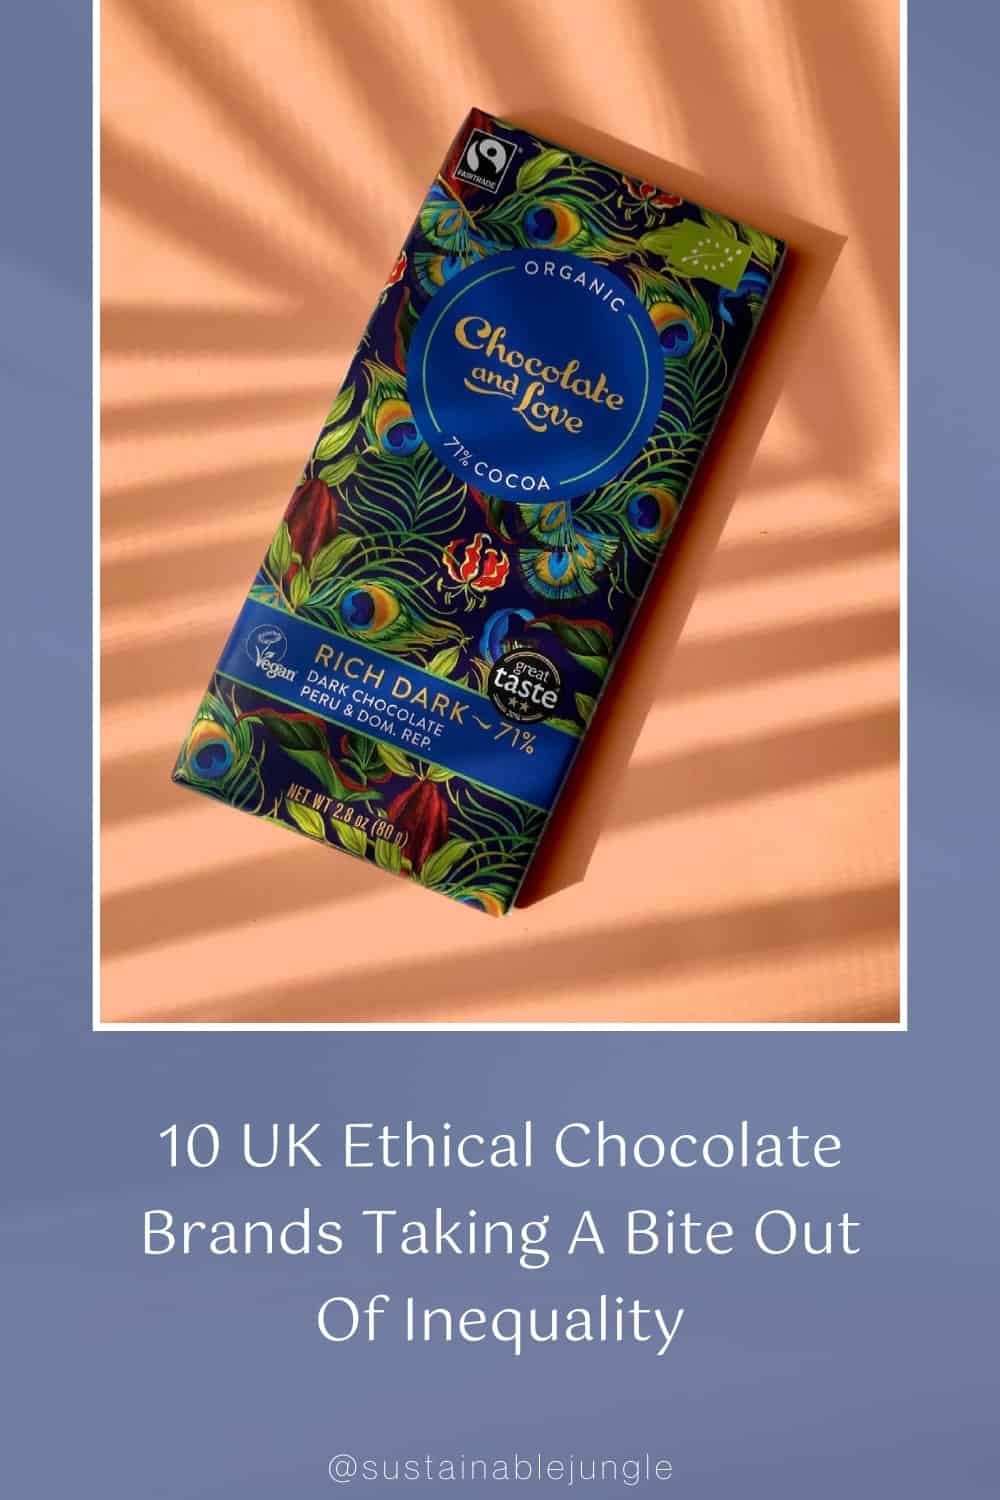 10个英国道德巧克力品牌打破不平等#欧洲伦理巧克力#欧洲伦理纯素食巧克力#欧洲伦理巧克力品牌#欧洲伦理巧克力#可持续巧克力#可持续巧克力品牌#可持续巧克力包装#可持续巧克力棒#可持续巧克力#公平贸易巧克力#生态友好巧克力#可持续丛林图片来自巧克力与爱